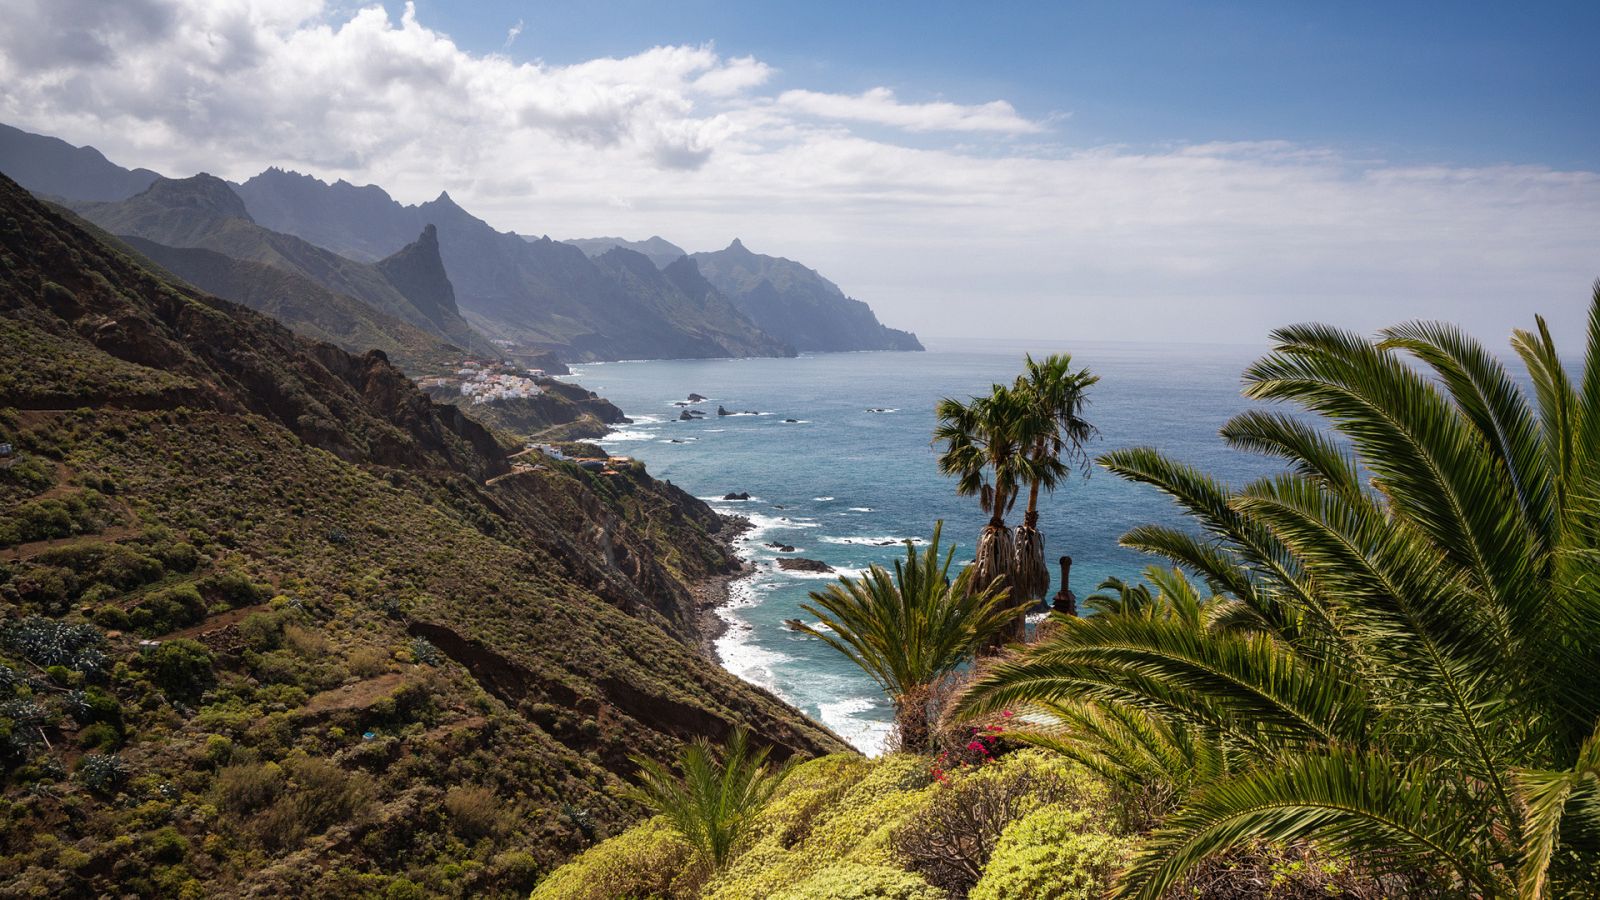 Turismo rural en el mundo - Tenerife y Gran Canaria